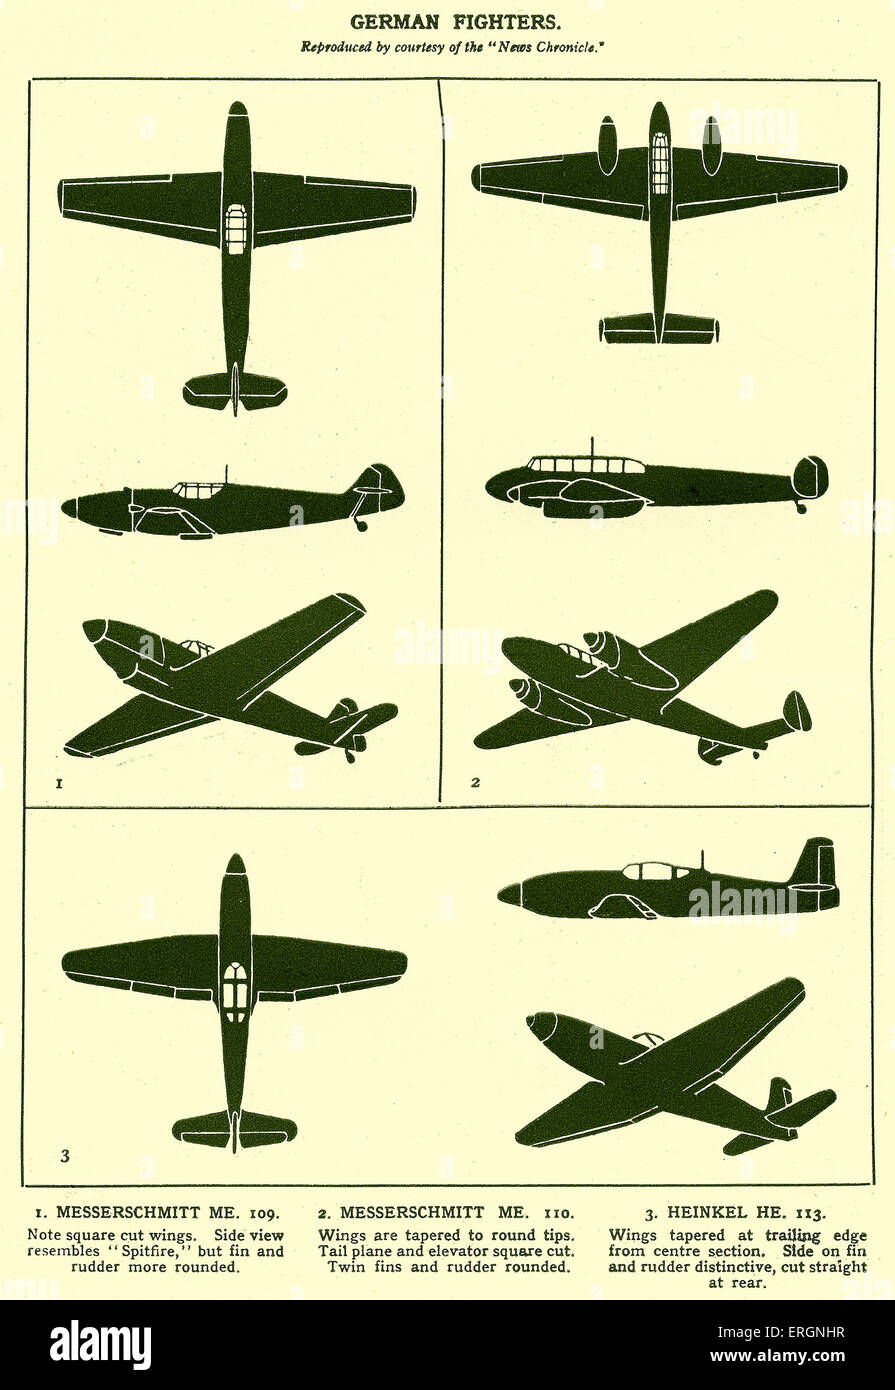 WW2 -Aviones de combate alemán. Diagramas de un Messerschmitt Me 109, Messerschmitt Me 110 y Heinkel He 113. Foto de stock